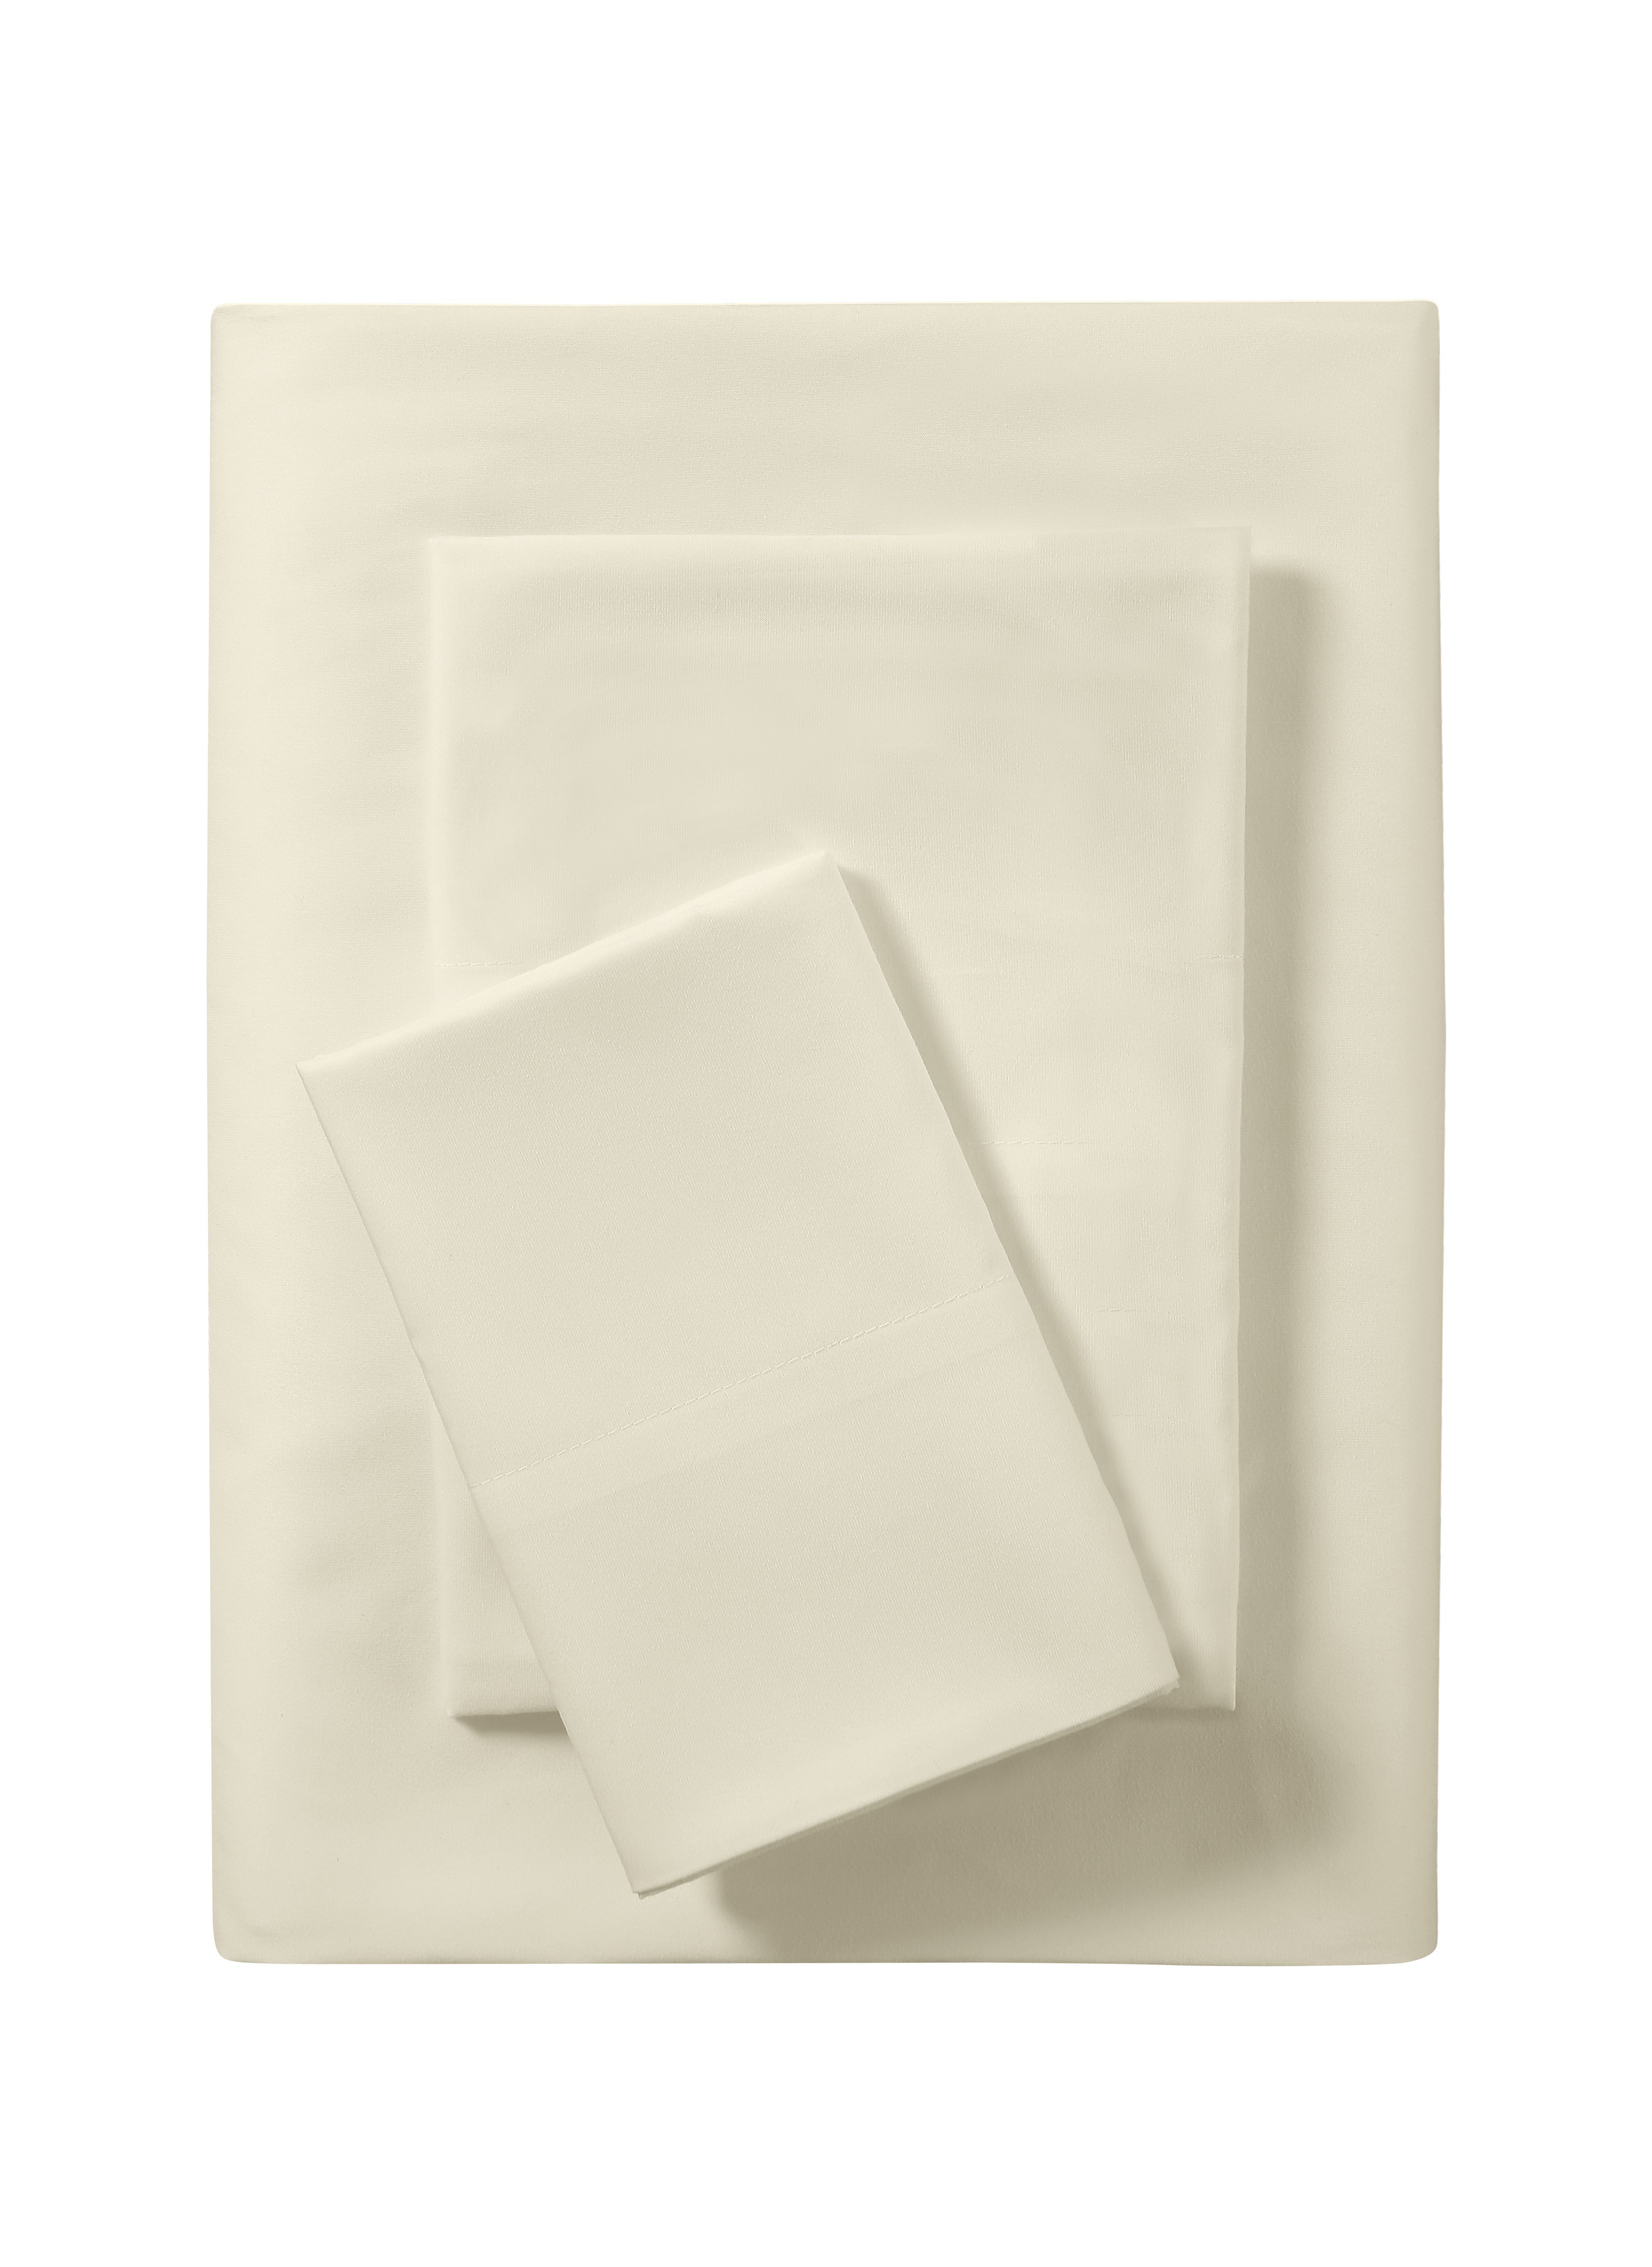 Mainstays Basics Value Microfiber Sheet Set, Twin, Fresh Ivory, 3 Piece - image 1 of 9